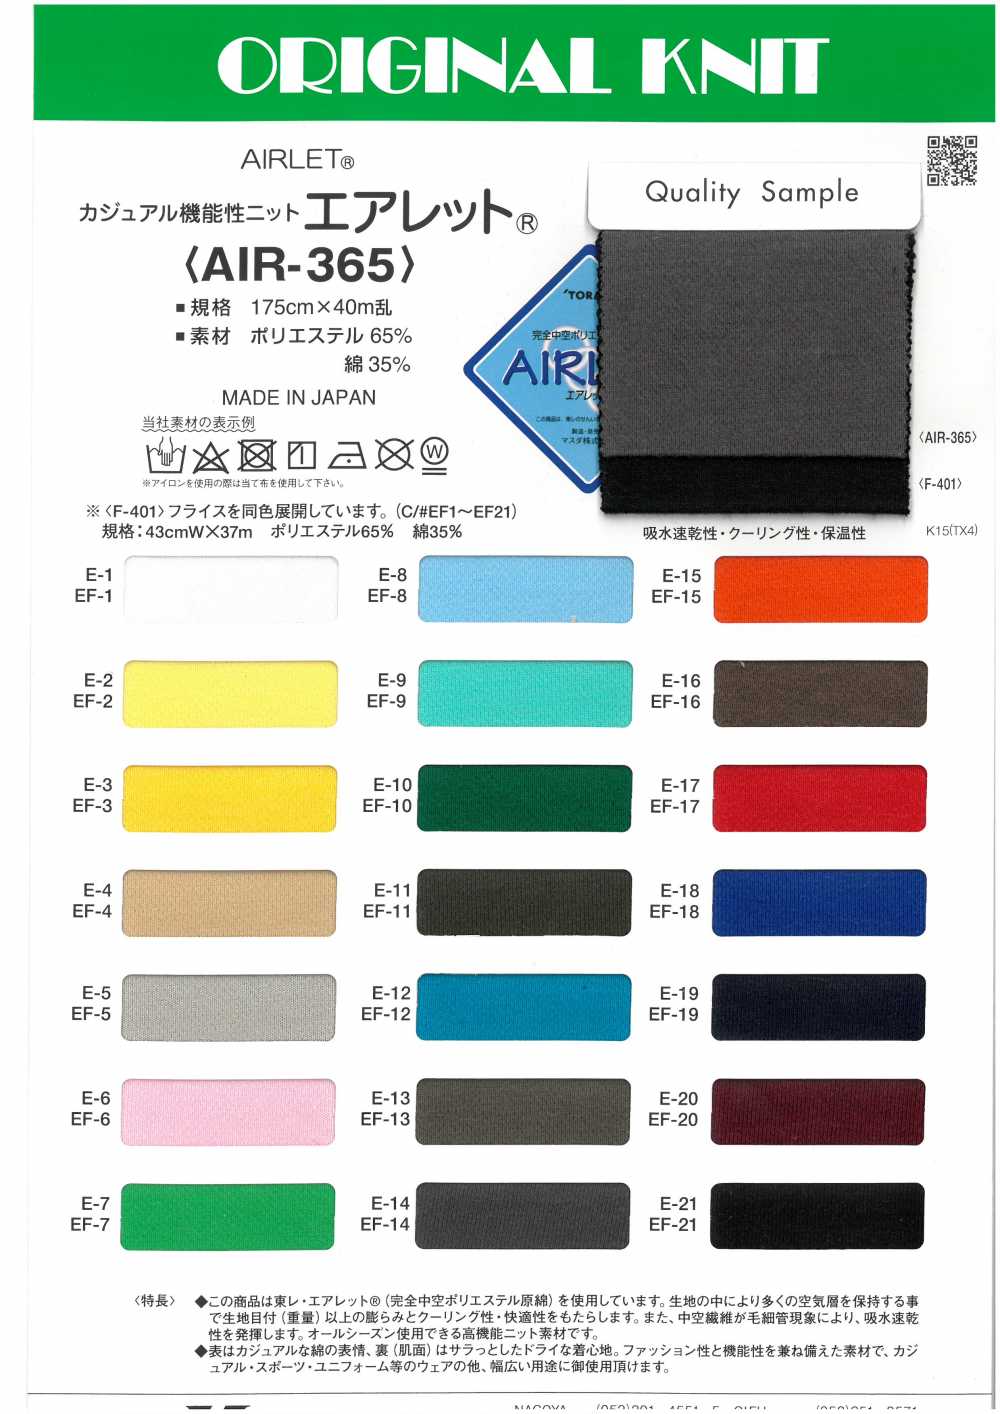 AIR-365 Khí Nén Vải Dệt Kim Chức Năng Thông Quần áo Thường Ngày Masuda (Masuda)